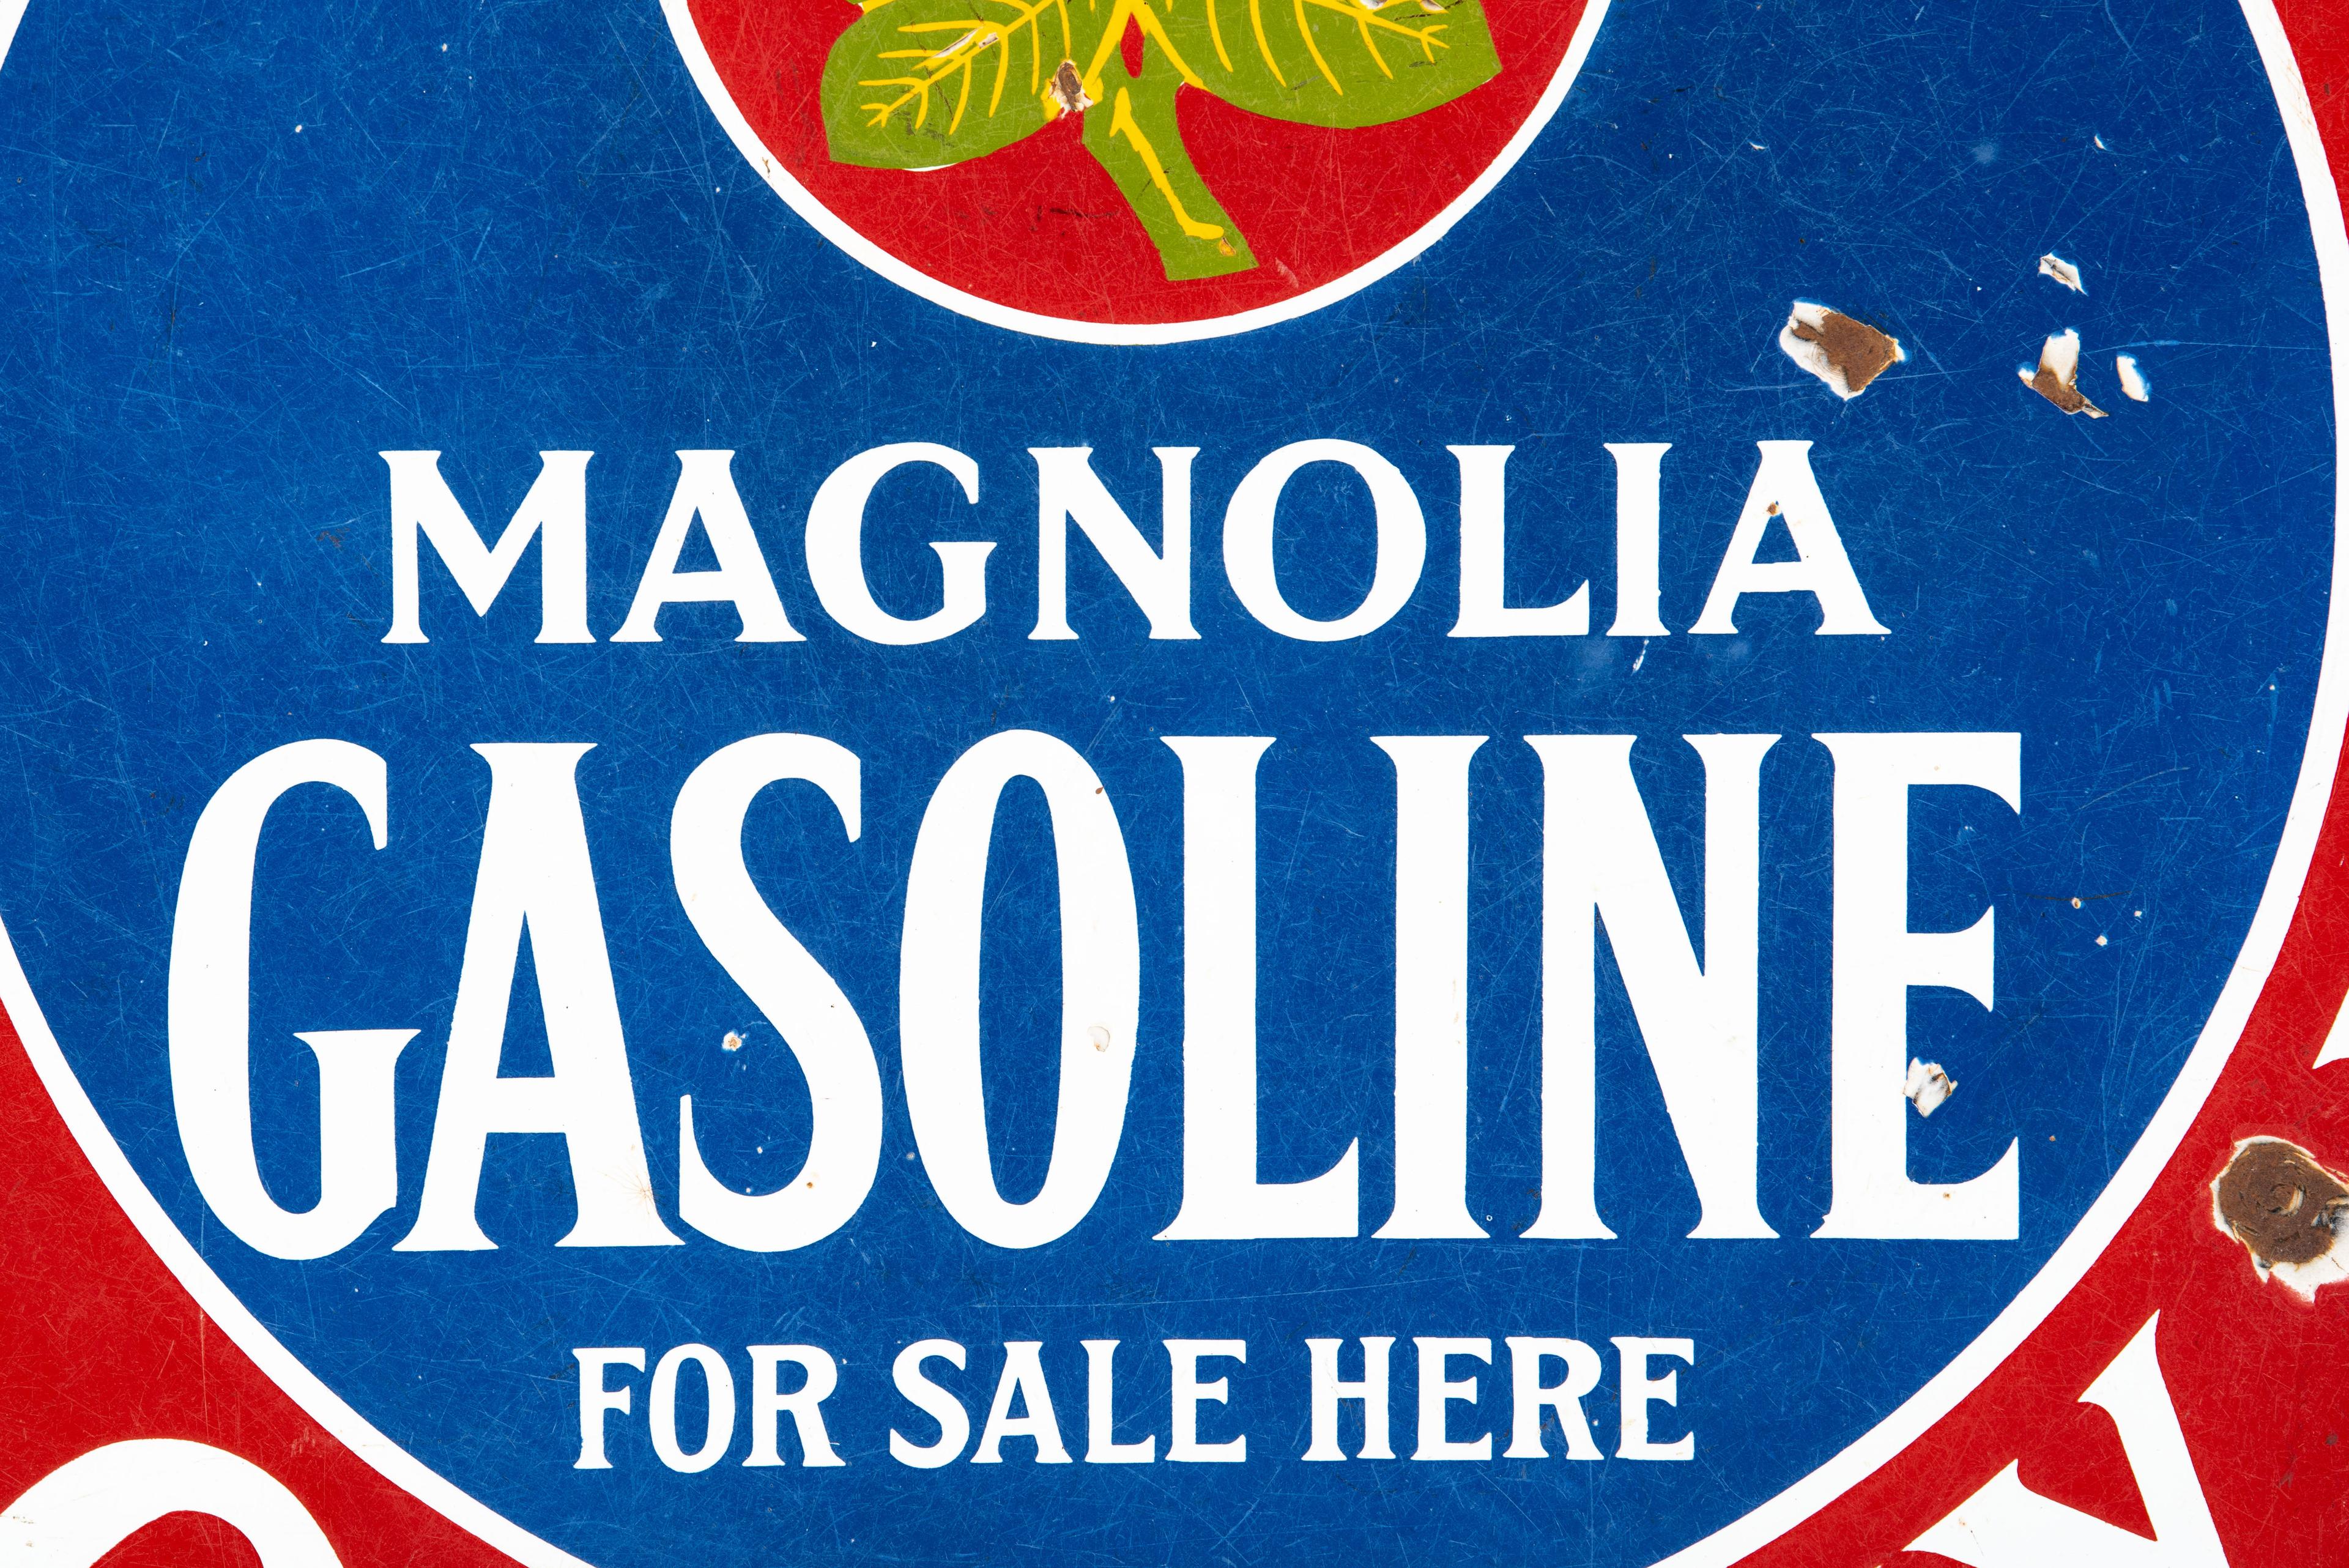 Magnolia Gasoline For Sale Here Porcelain Sign